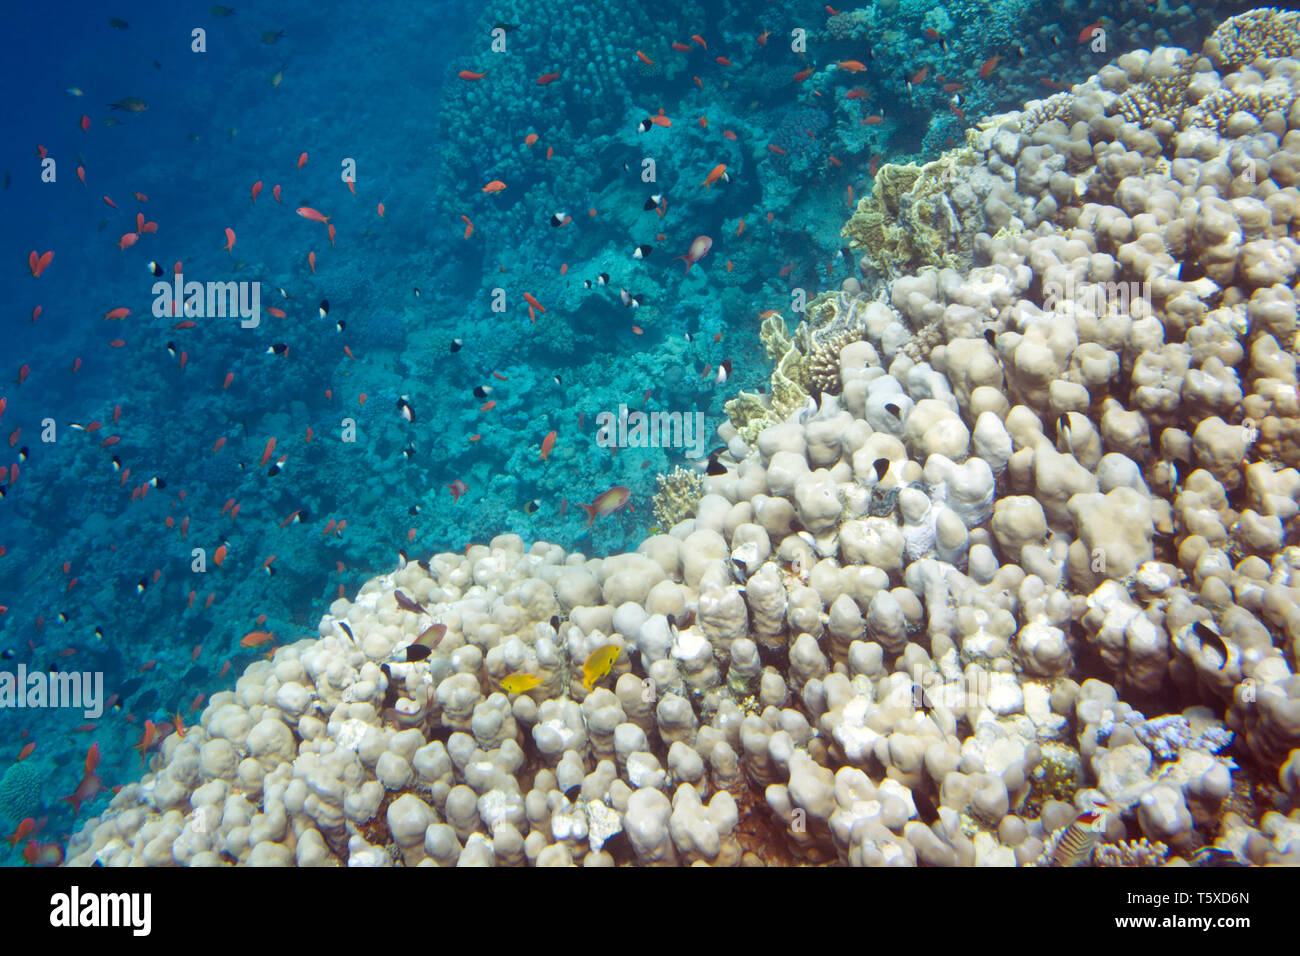 La vita subacquea del Mar Rosso in Egitto. I pesci di acqua salata e la barriera corallina. Scuola di pesce Foto Stock